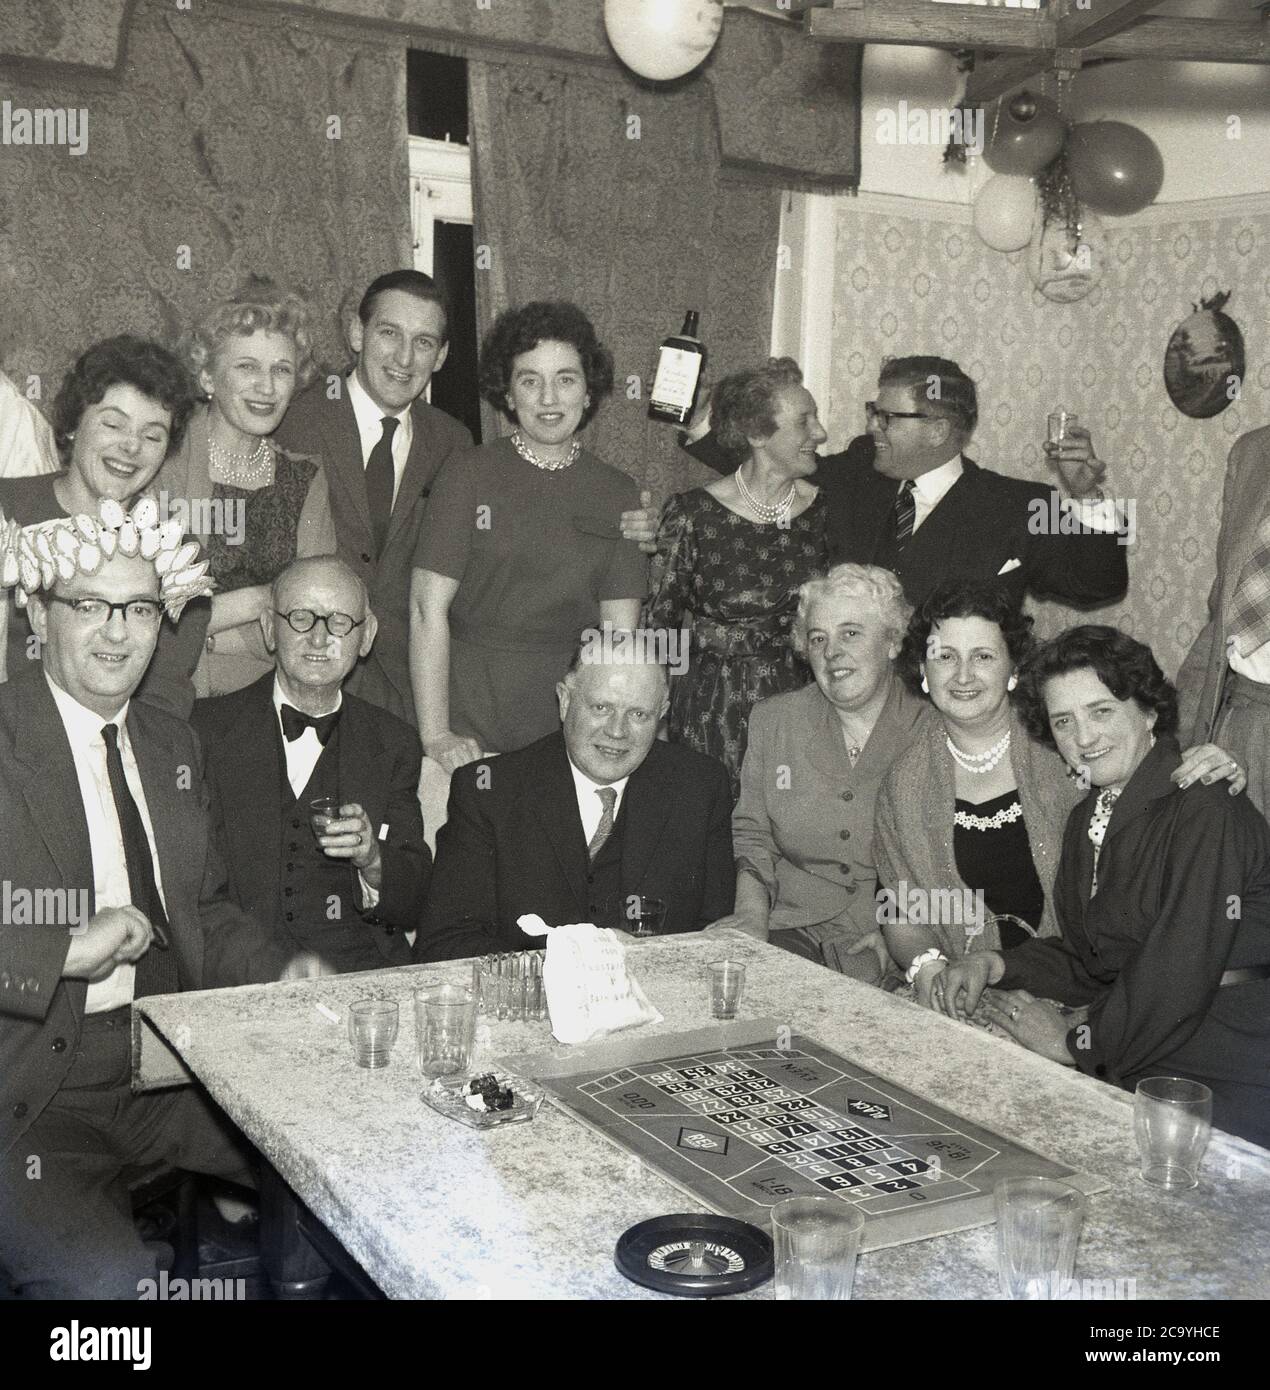 1960, storico, festa di compleanno per adulti in una casa, uomini e donne ben vestiti che festeggiano con alcune bevande, gin e un gioco di roulette da tavolo, con una piccola ruota e tavola seduti su un tavolo coperto di stoffa sala da pranzo, Inghilterra, Regno Unito. Foto Stock